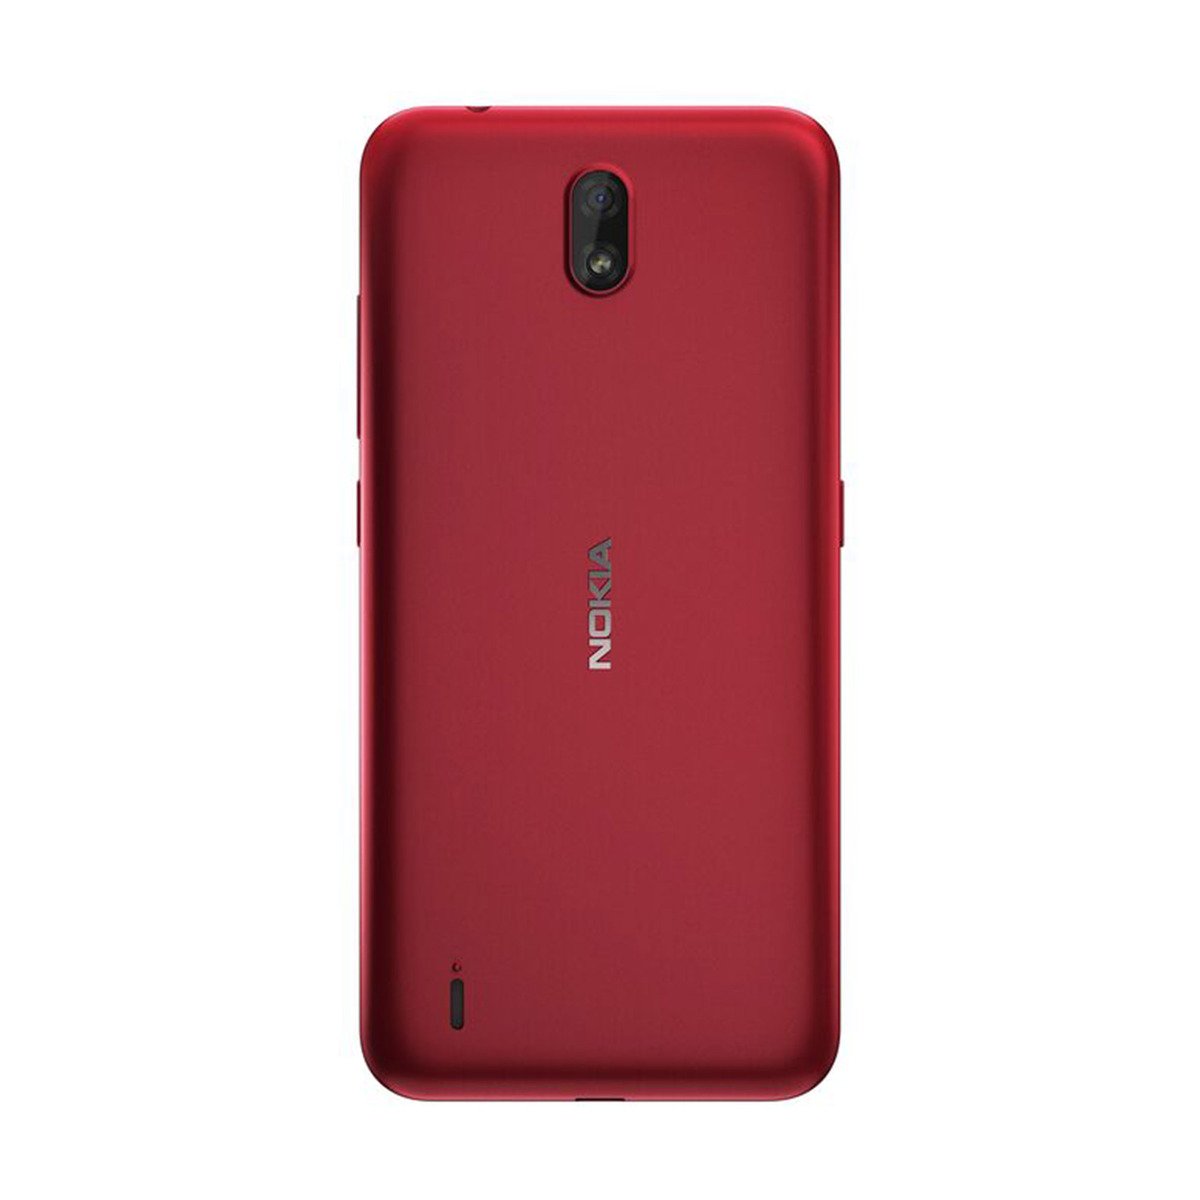 Nokia C1 Red